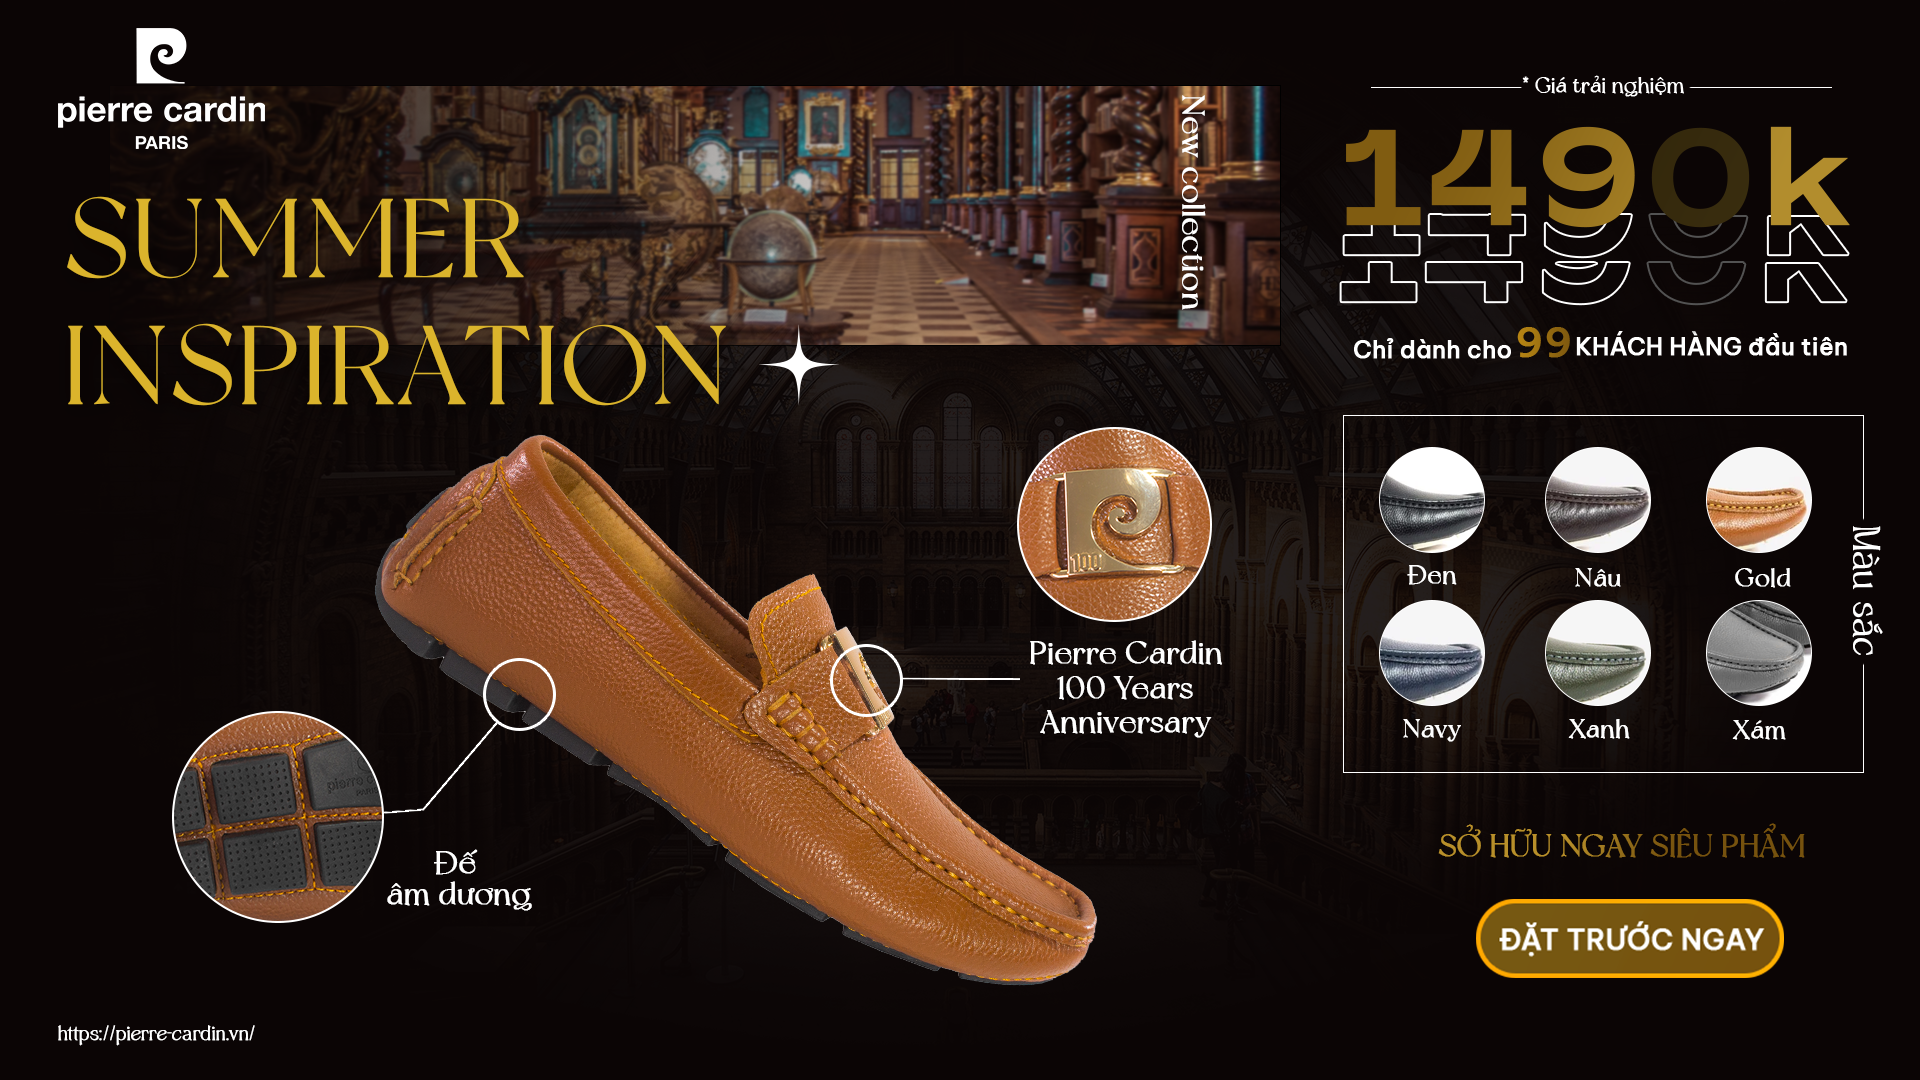 Giày Lười Pierre Cardin 520 đánh dấu 100 cửa hàng Pierre Cardin trên toàn quốc